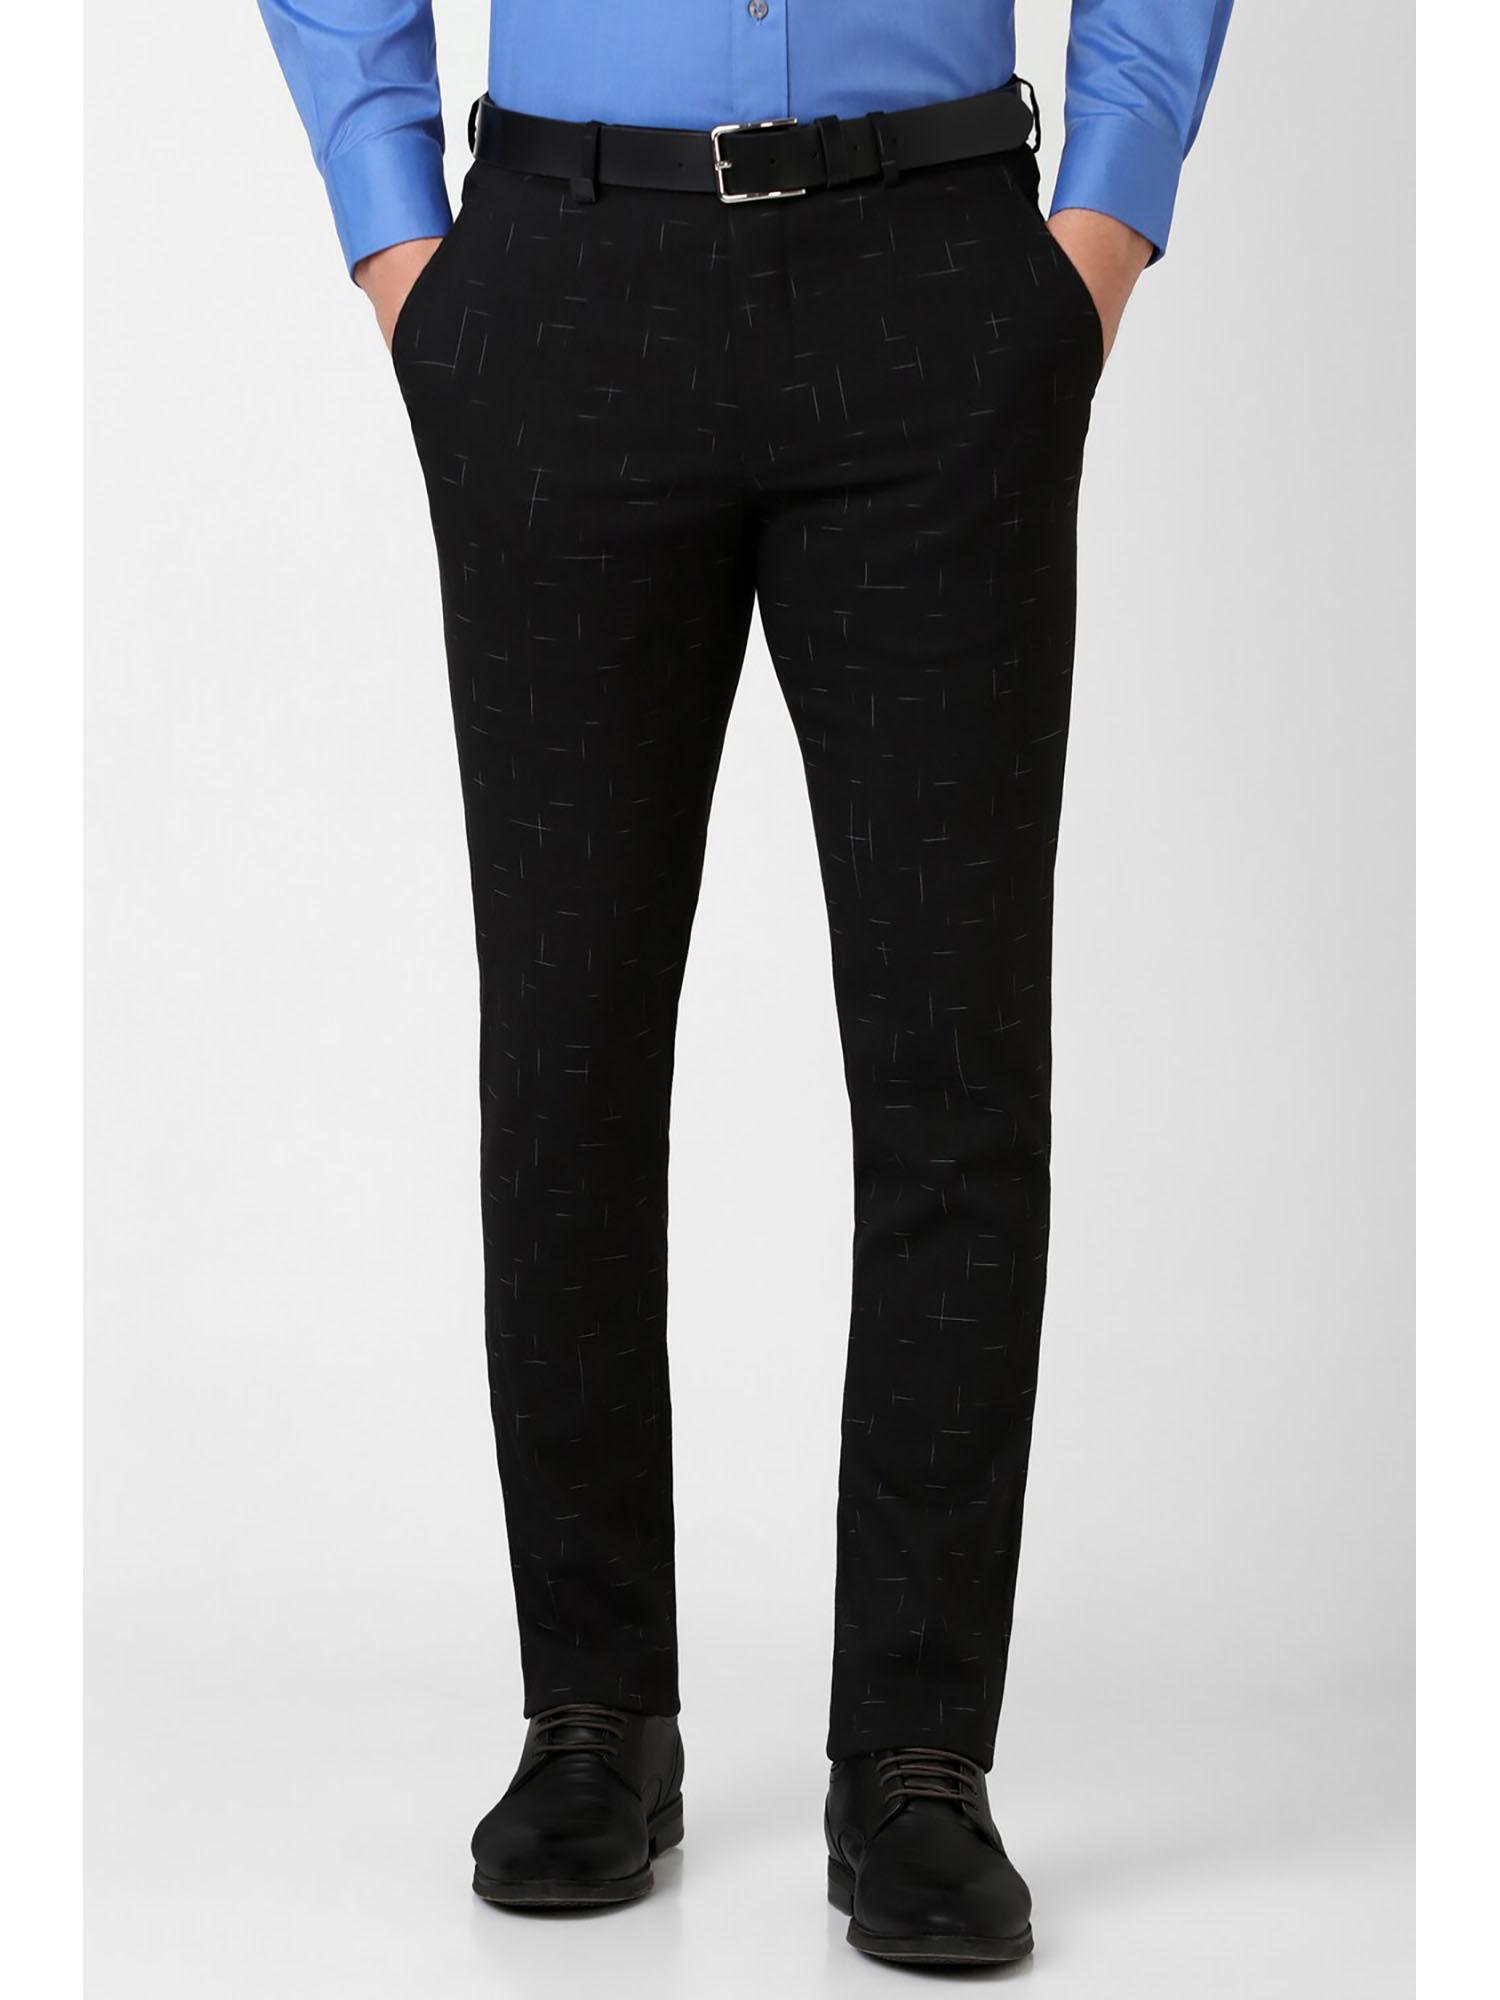 men-black-print-skinny-fit-trousers